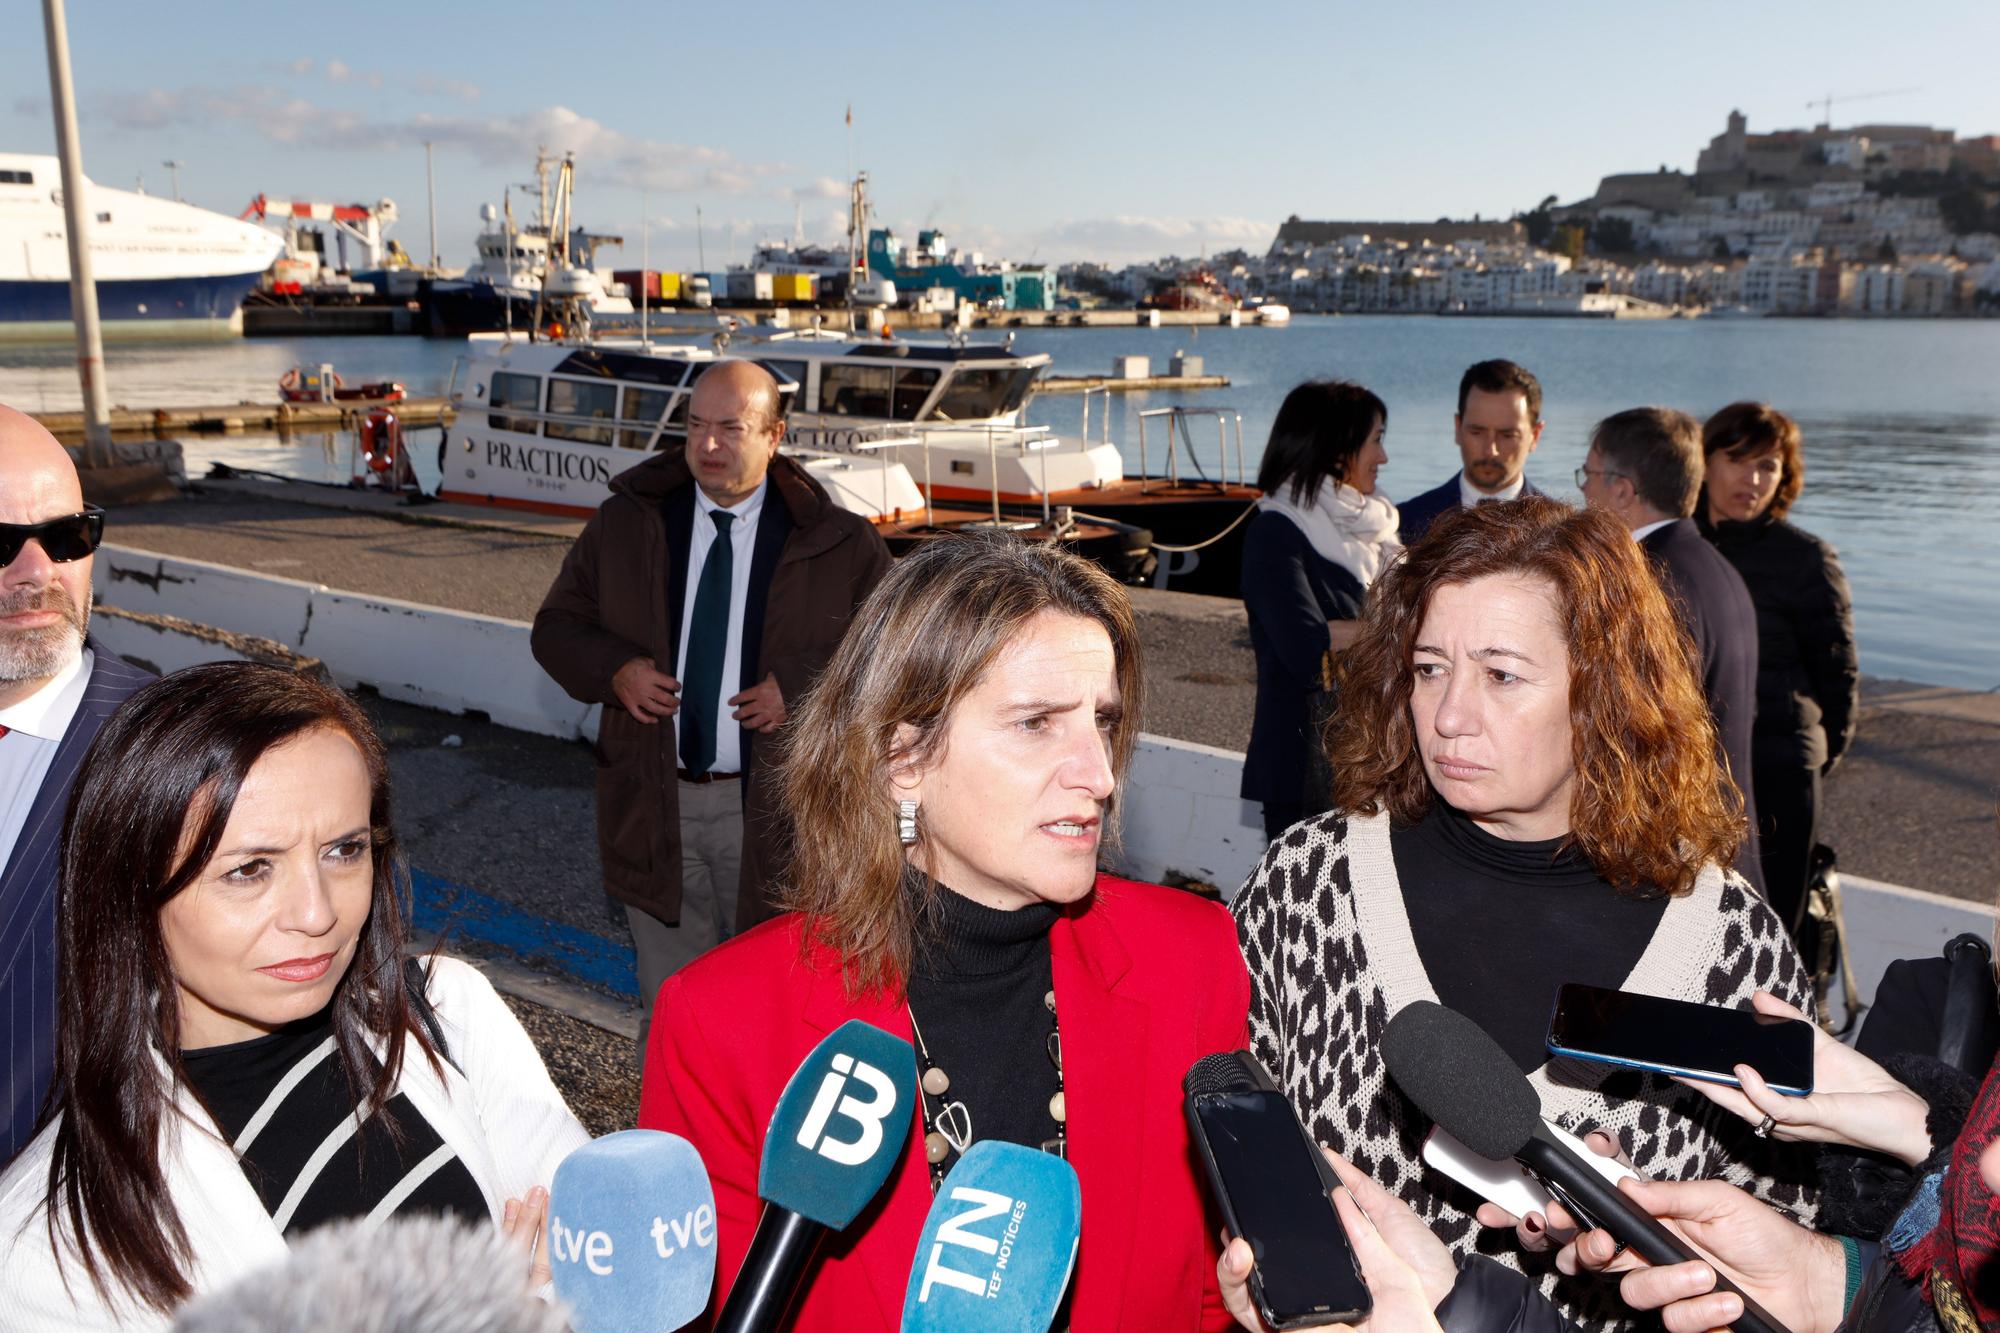 Presentación del nuevo enlace eléctrico entre Ibiza y Formentera